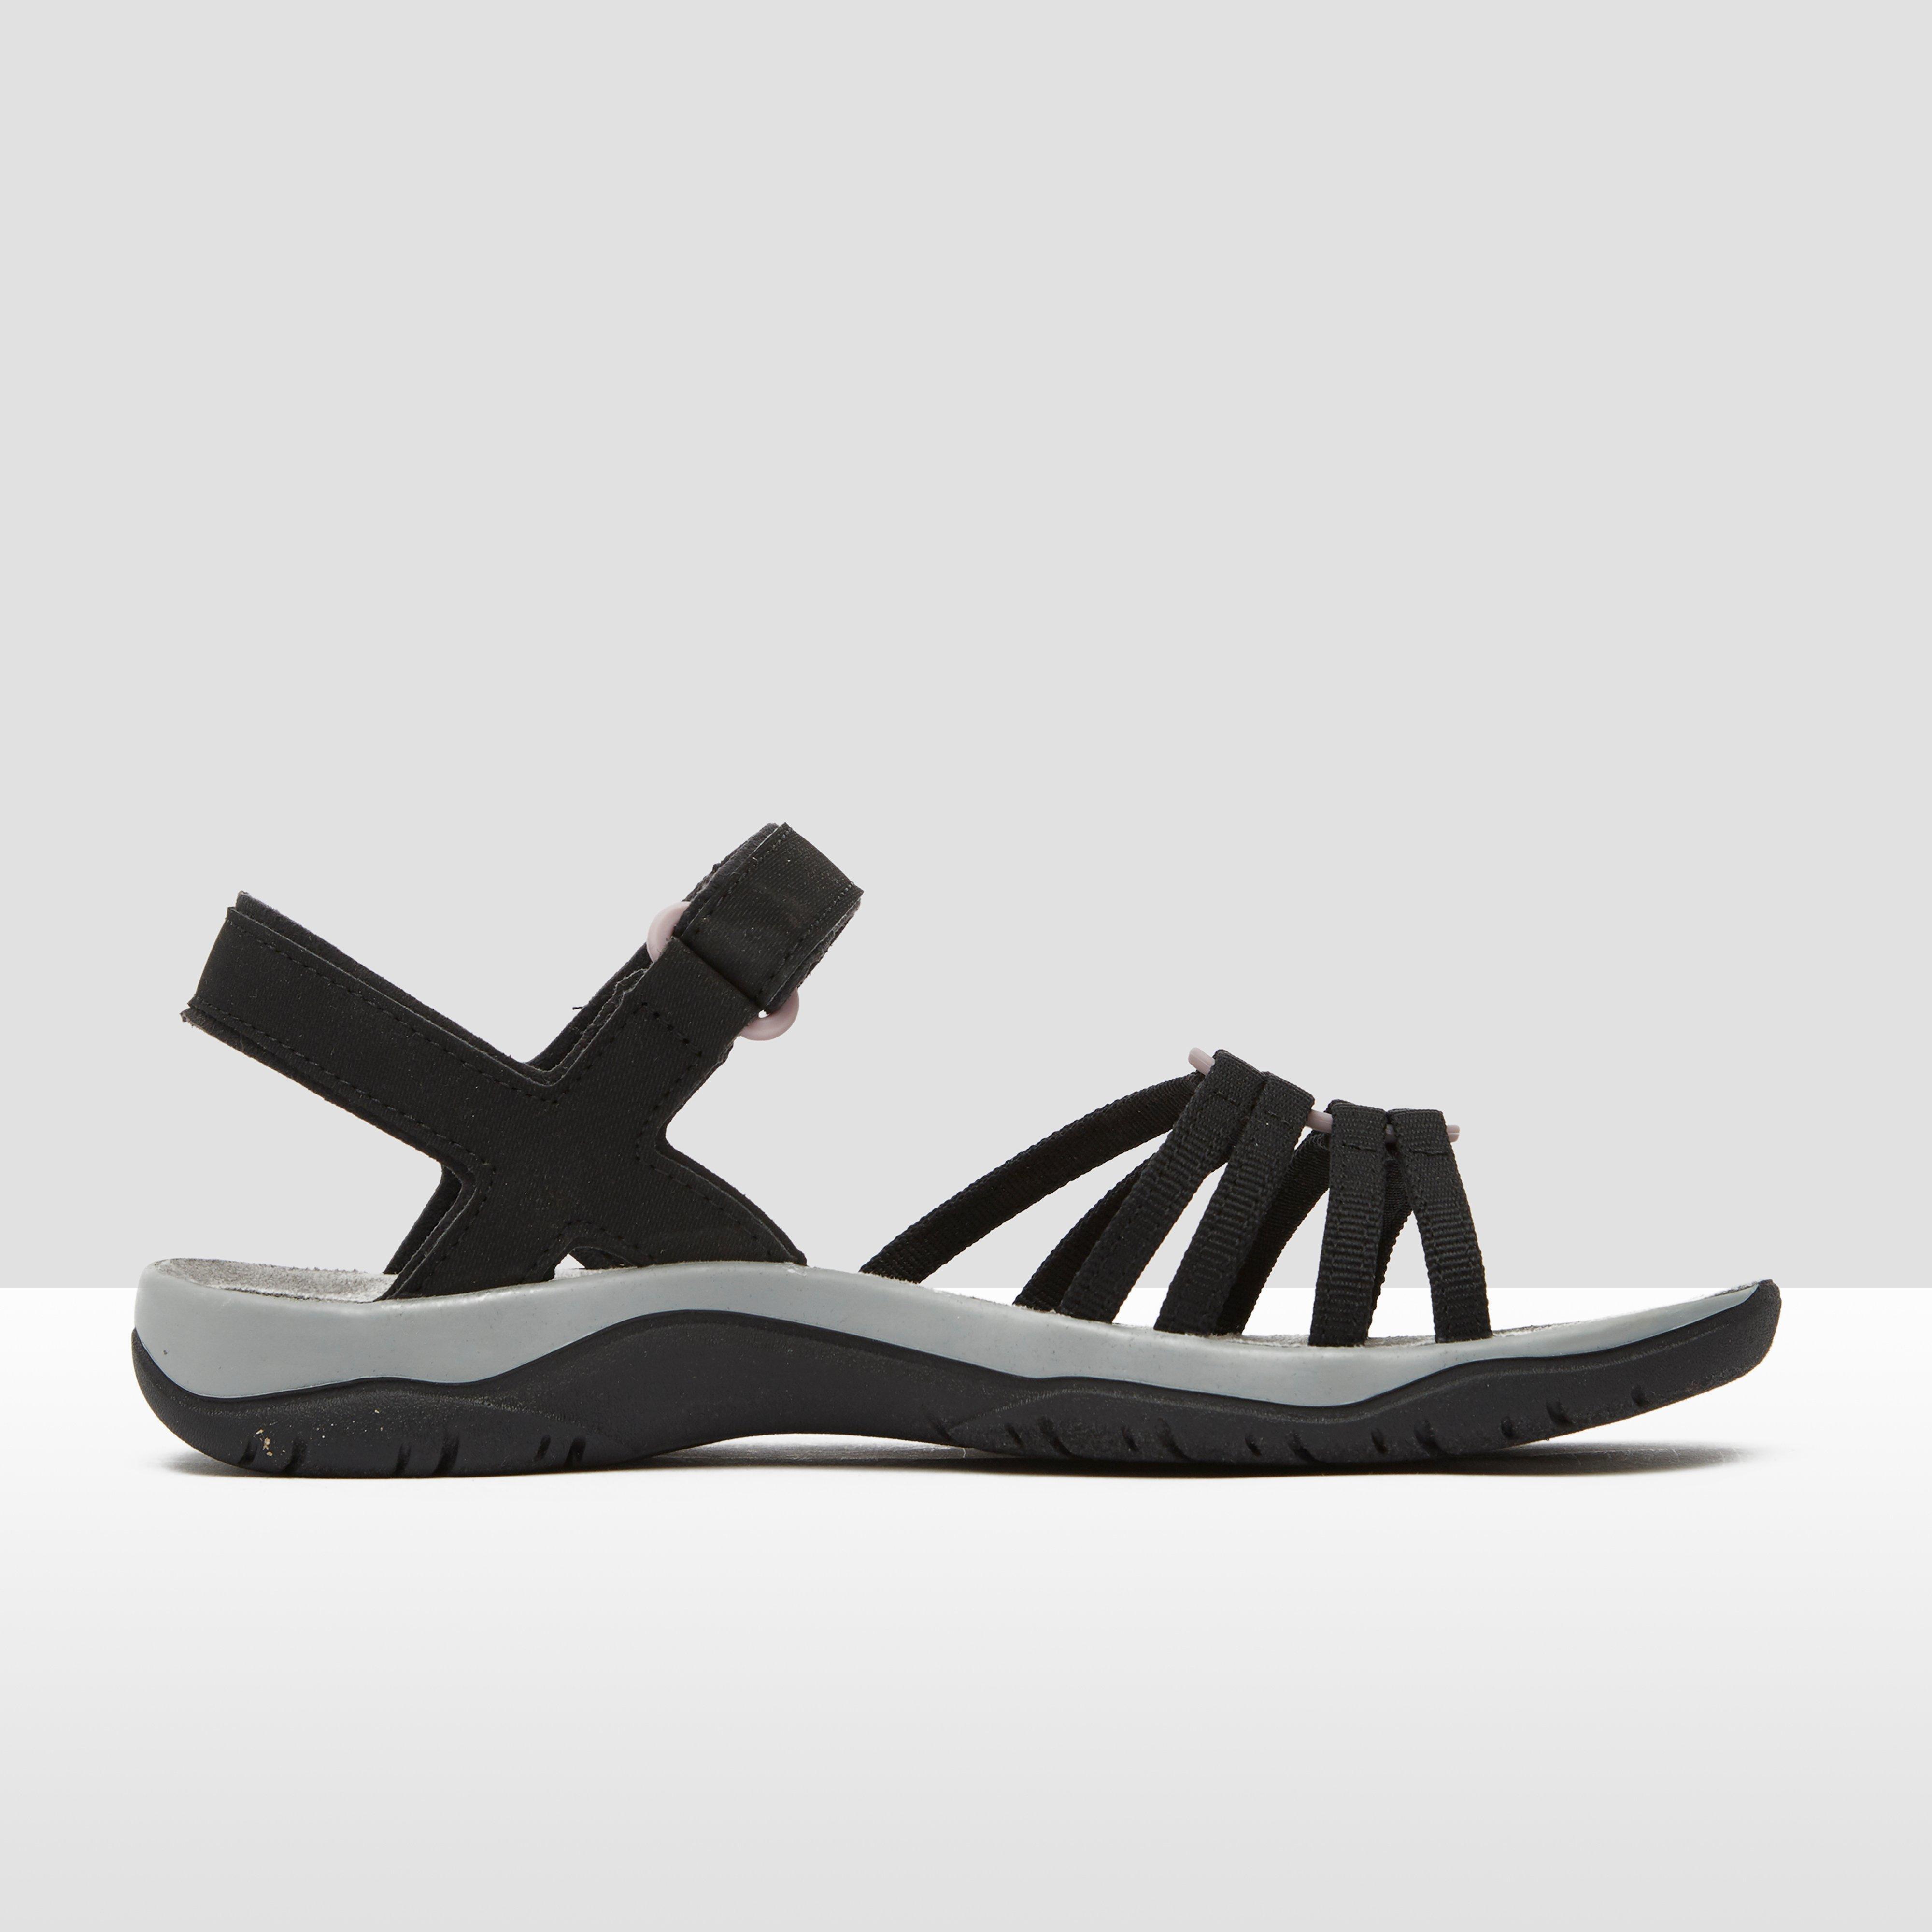 Schoenen Sandalen Outdoor sandalen Wolky Outdoor sandalen zwart wetlook 